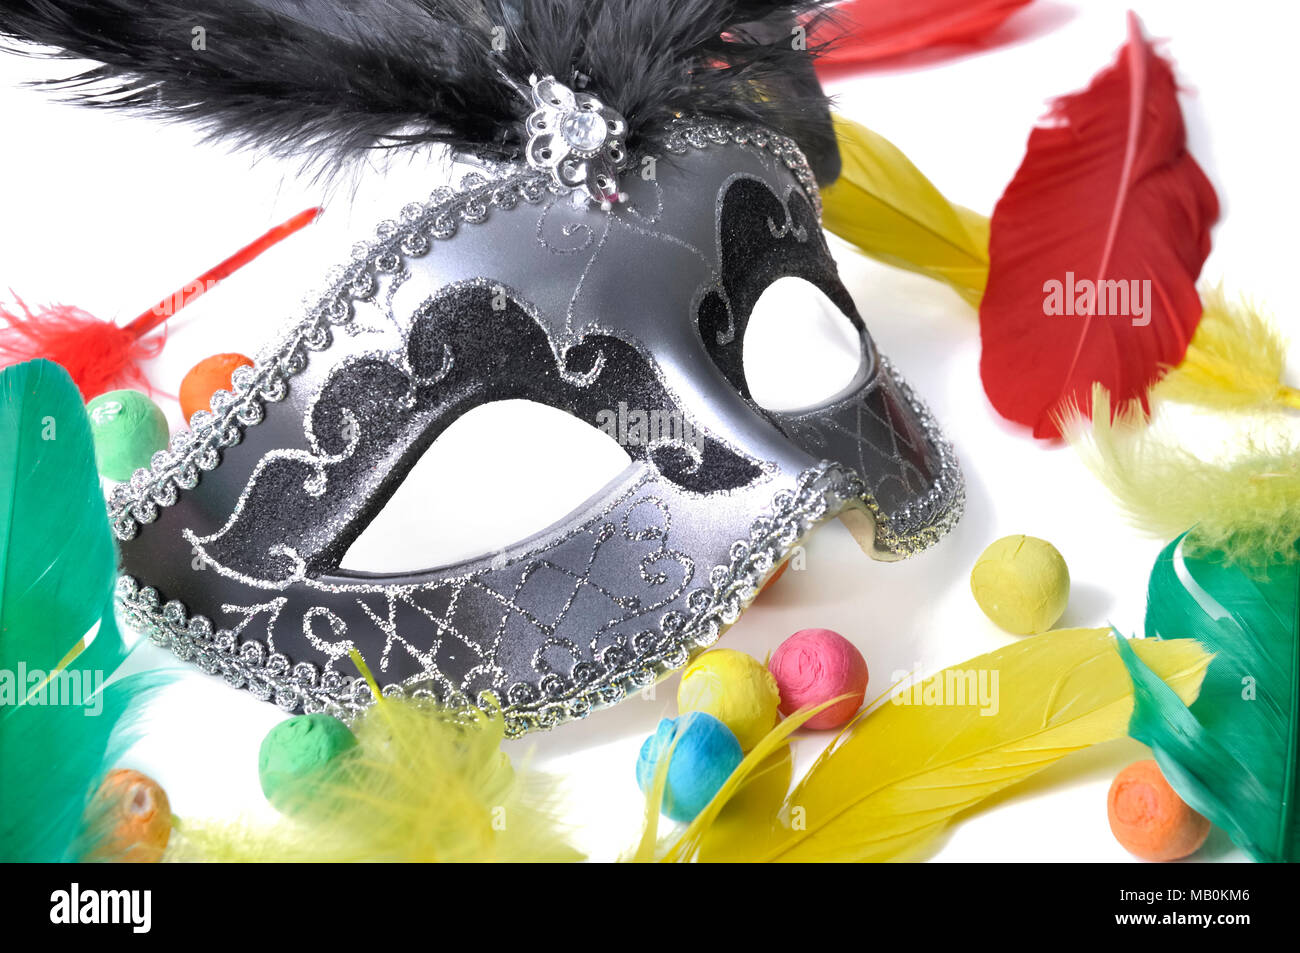 Dunkle schöne Karneval Maske unter bunten Federn und Kugeln auf weißem Papier backgroung Stockfoto